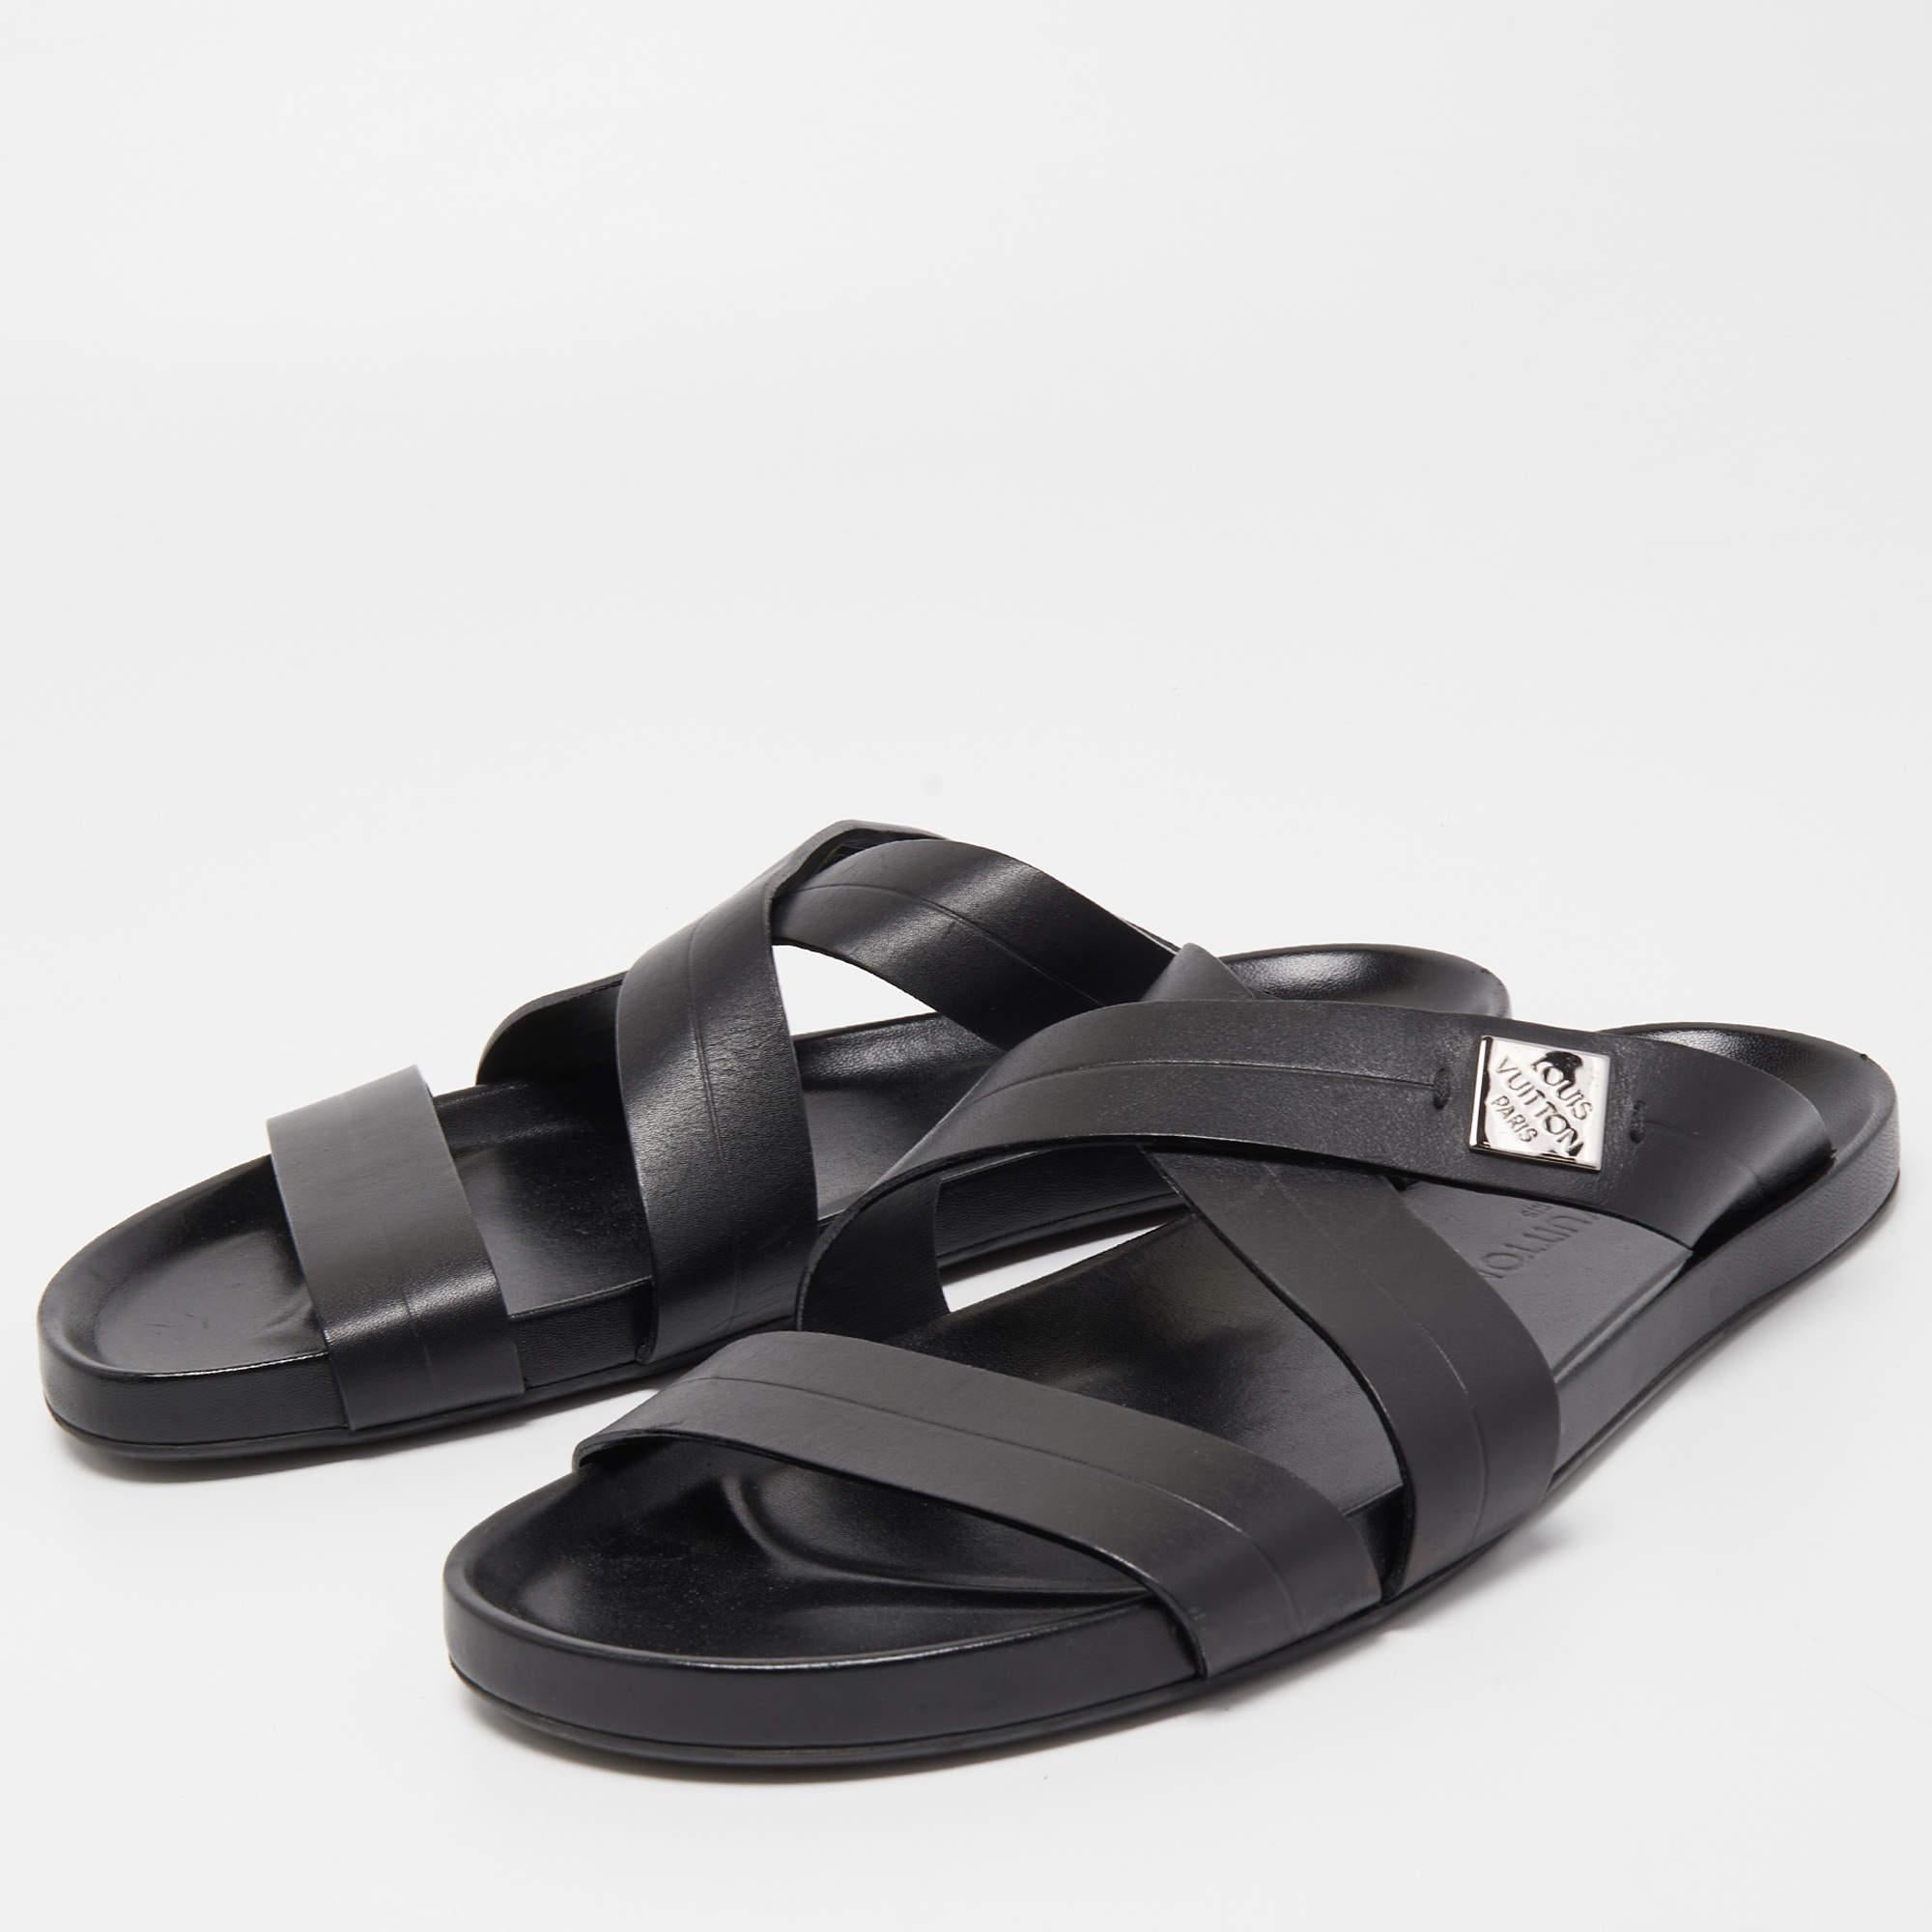 Louis Vuitton Black Leather Criss Cross Strap Flat Slide Sandals